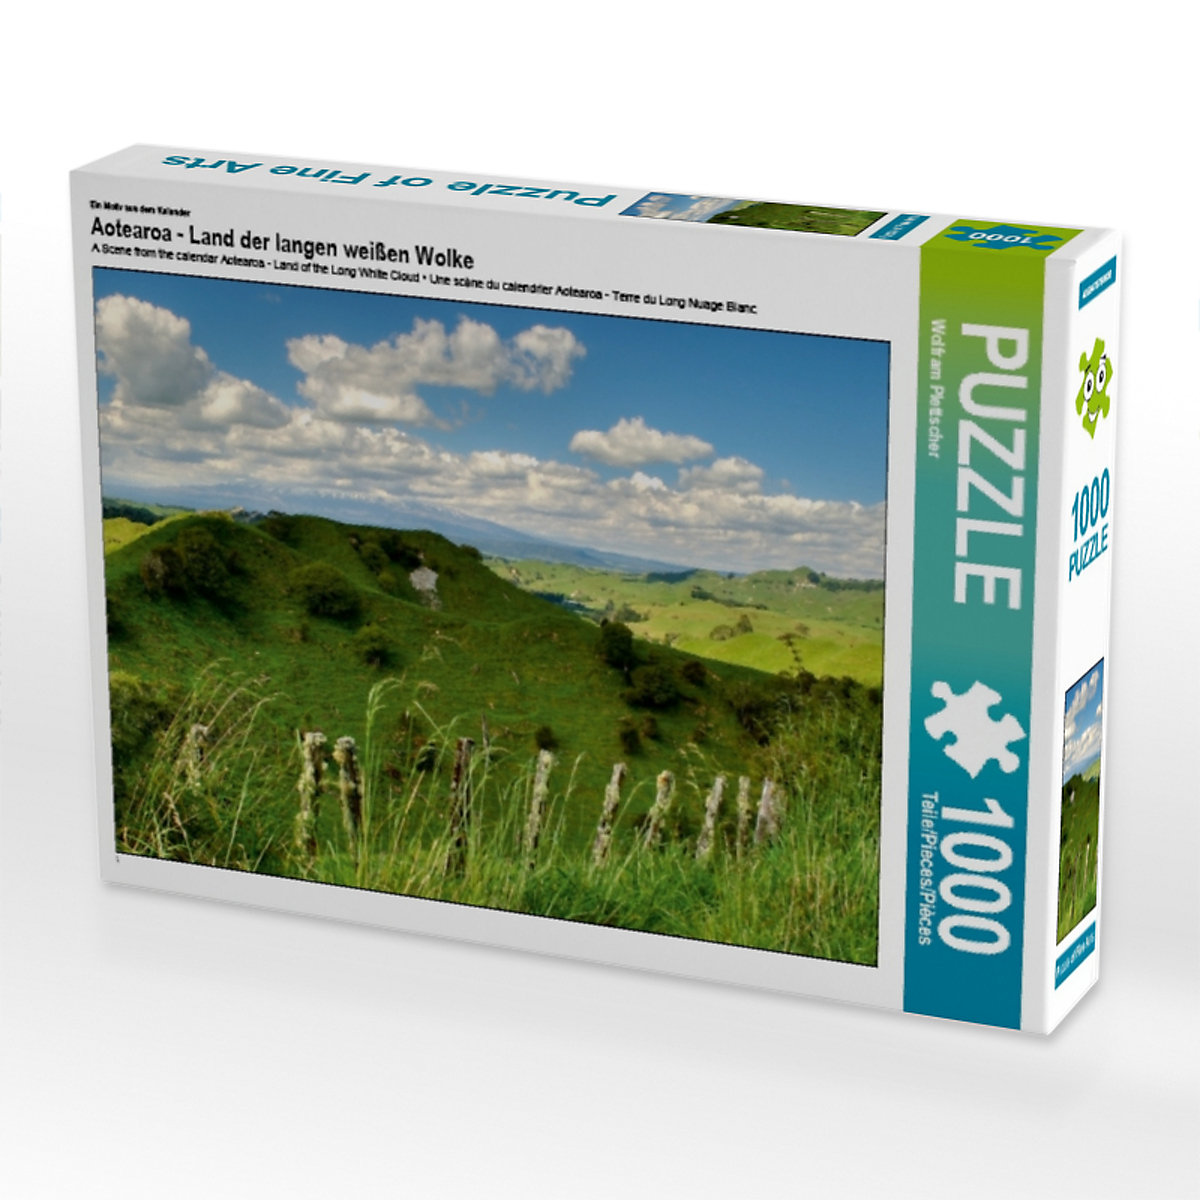 CALVENDO® Puzzle CALVENDO Puzzle Aotearoa Land der langen weißen Wolke 1000 Teile Foto-Puzzle für glückliche Stunden